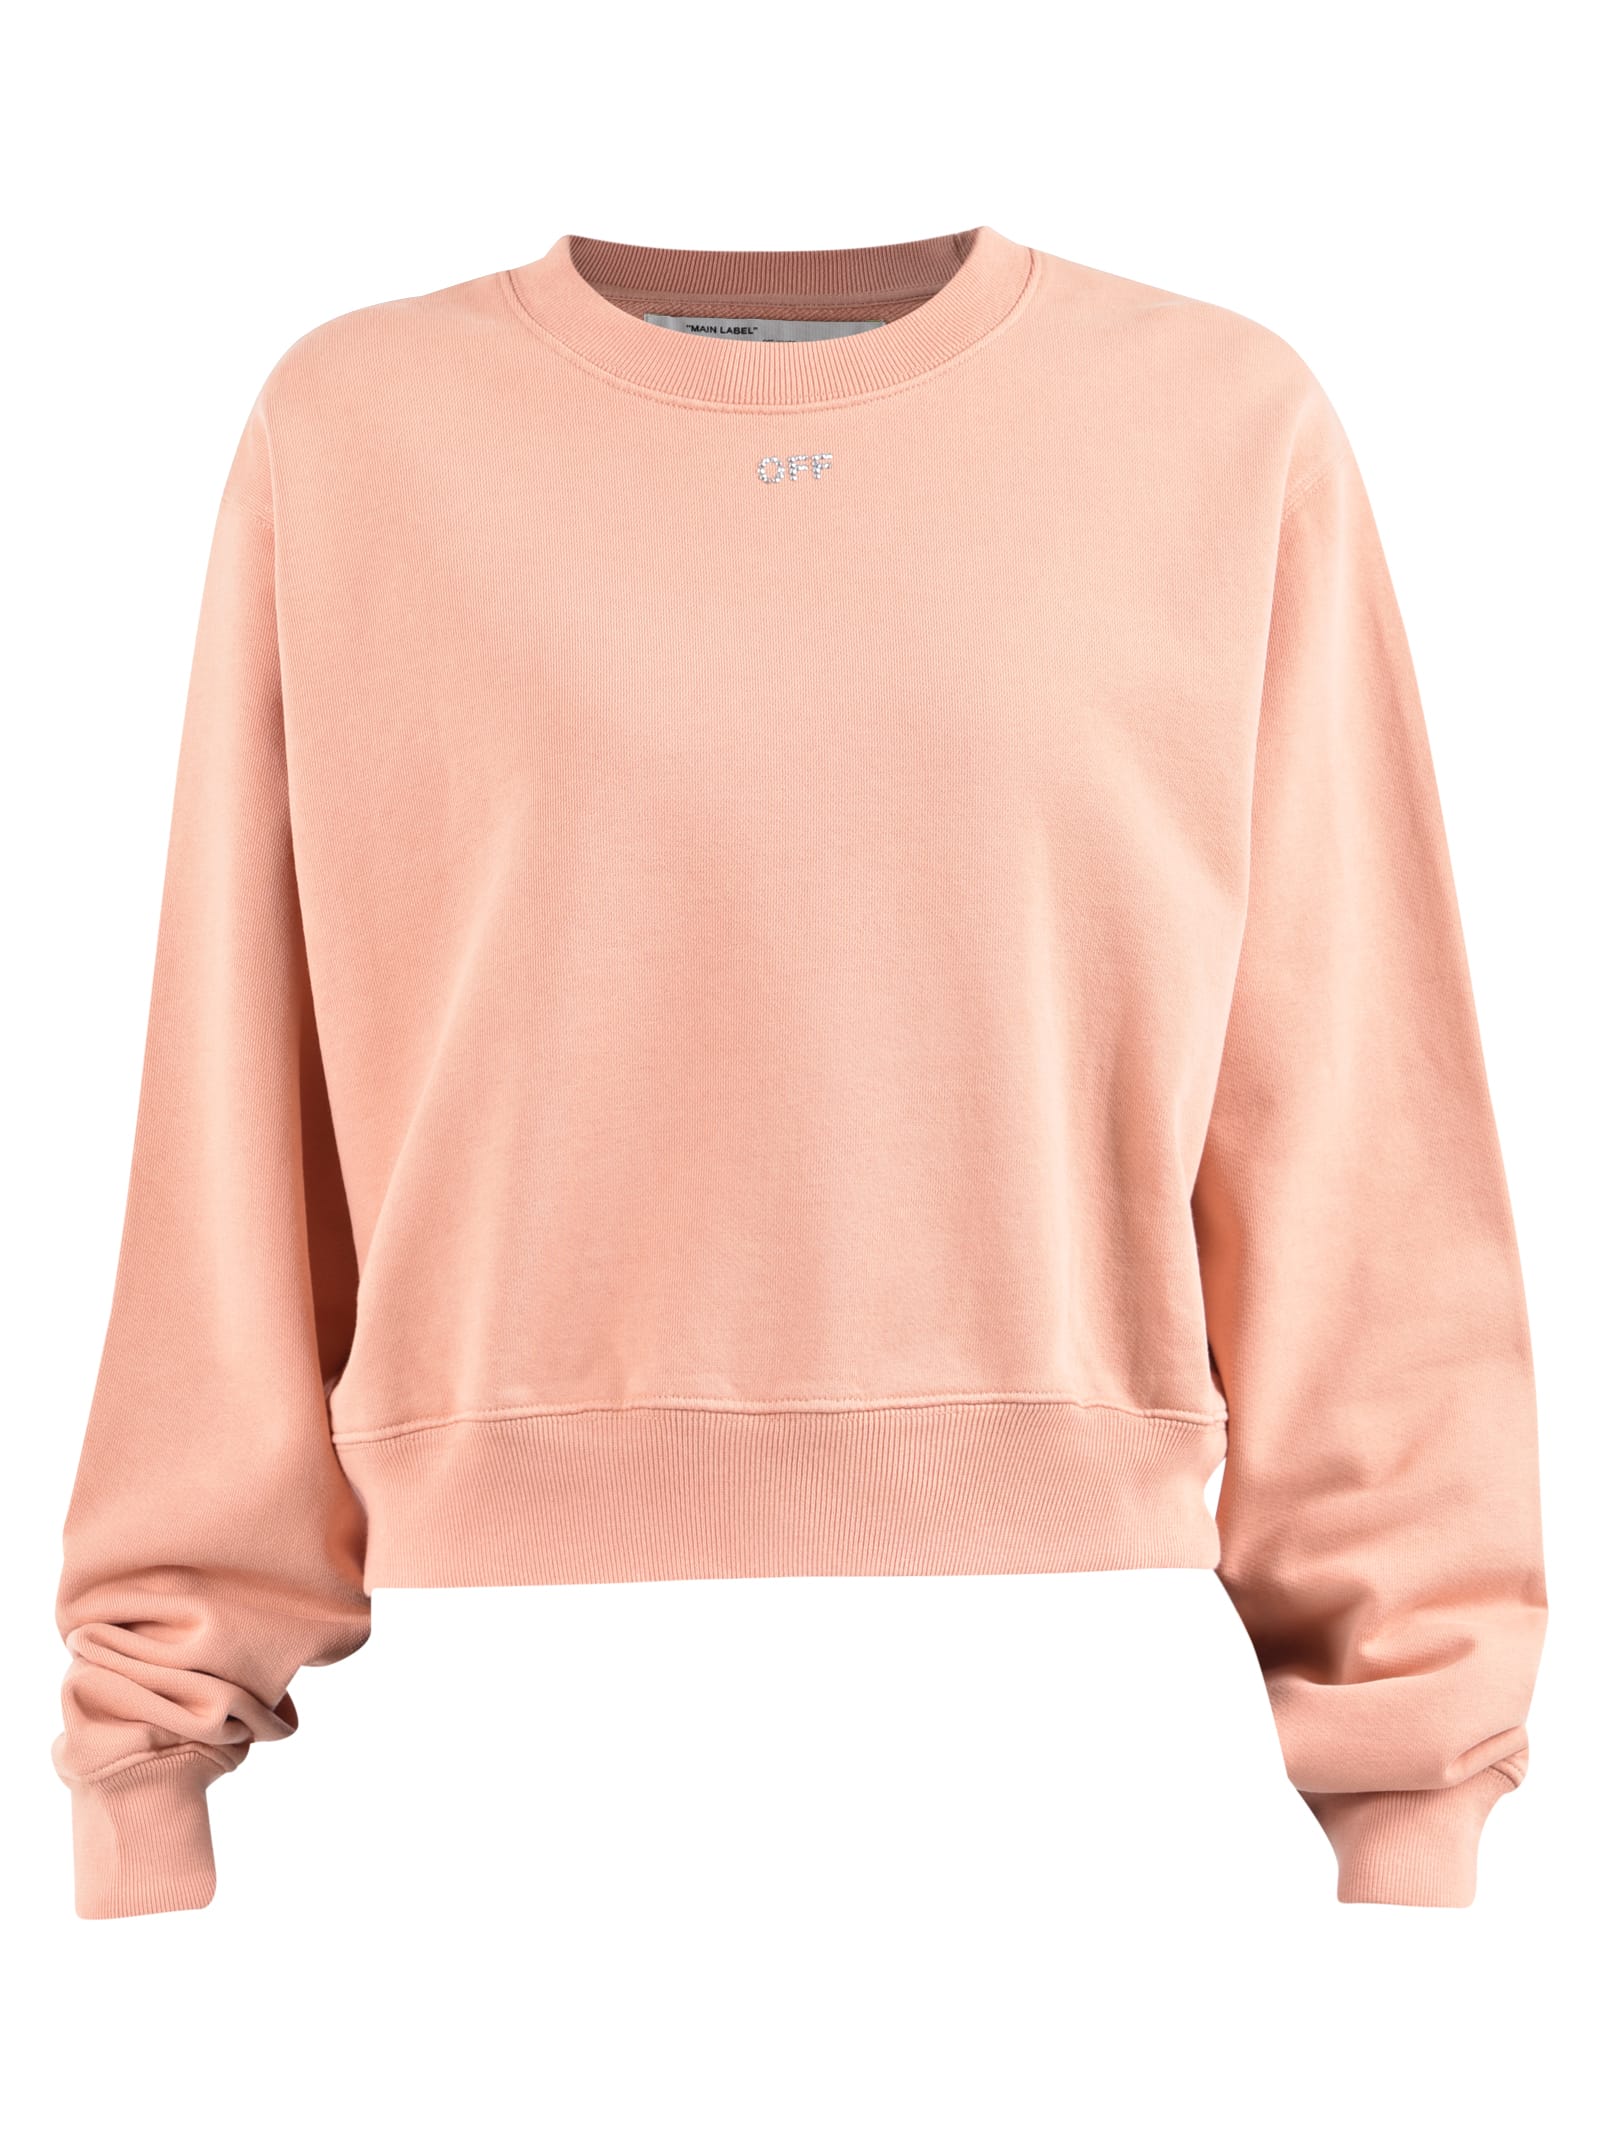 White Printed Sweatshirt - Pink 